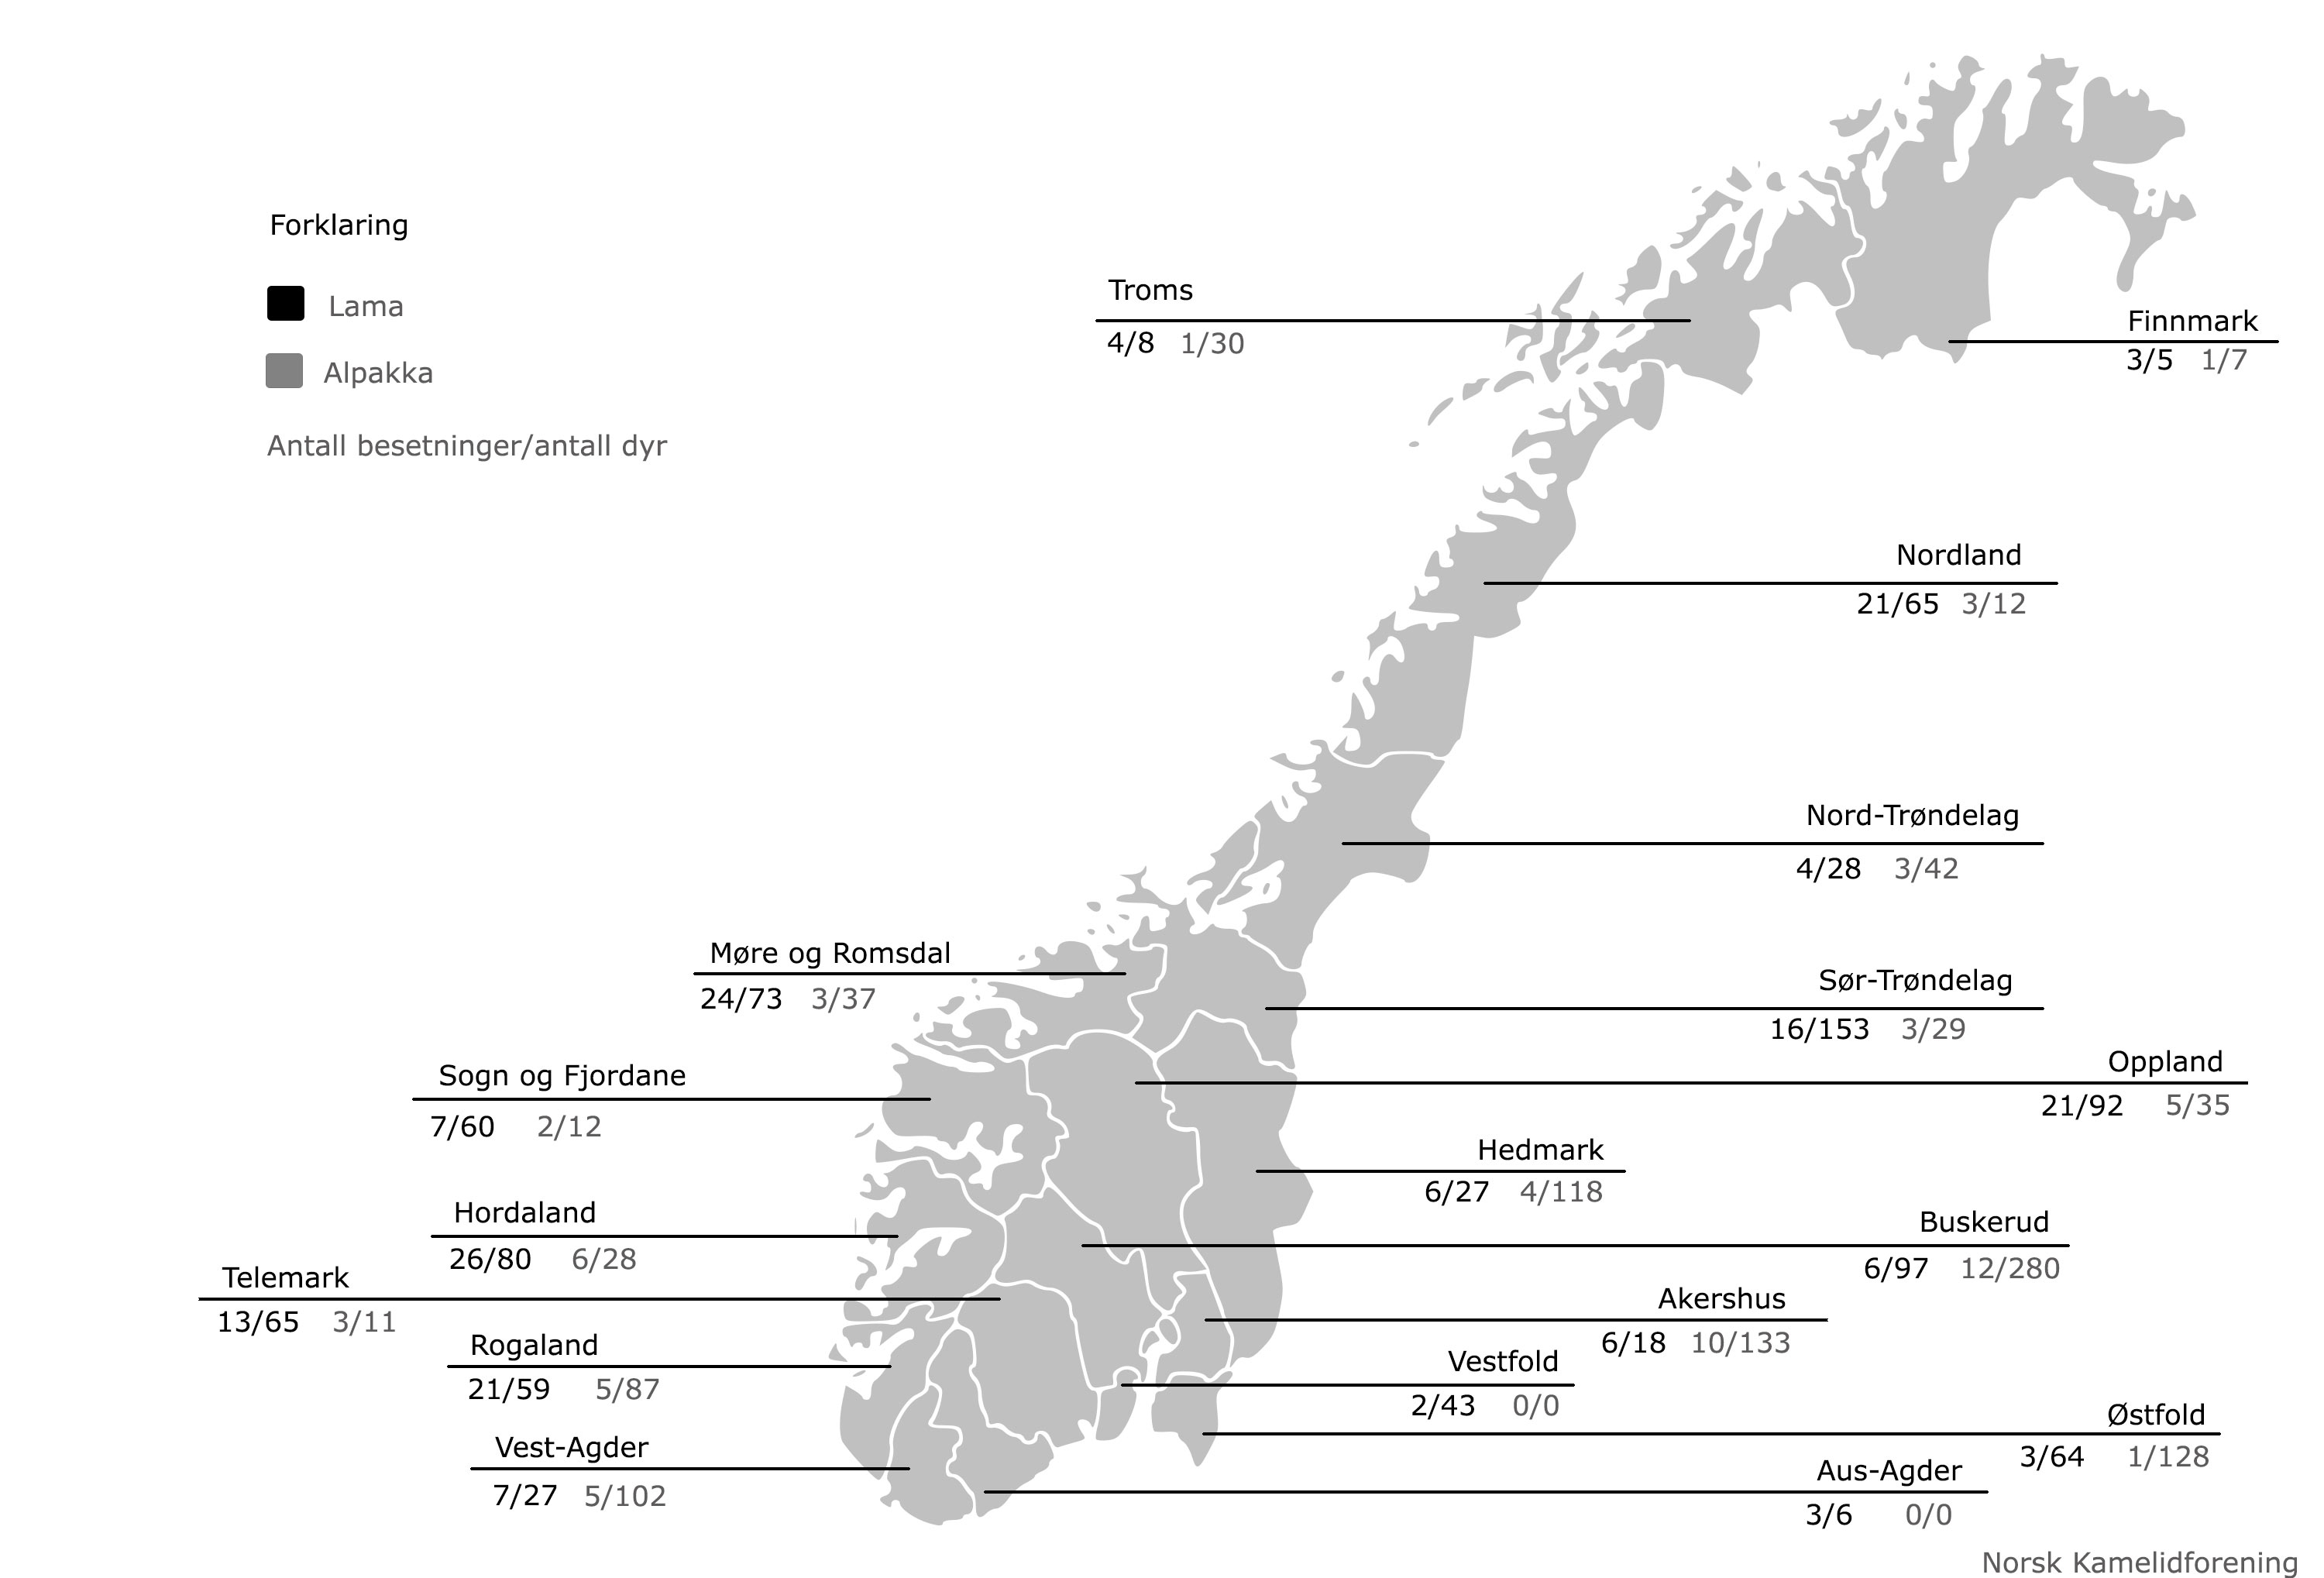 Statistikk for lama og alpakka i Norge 2017